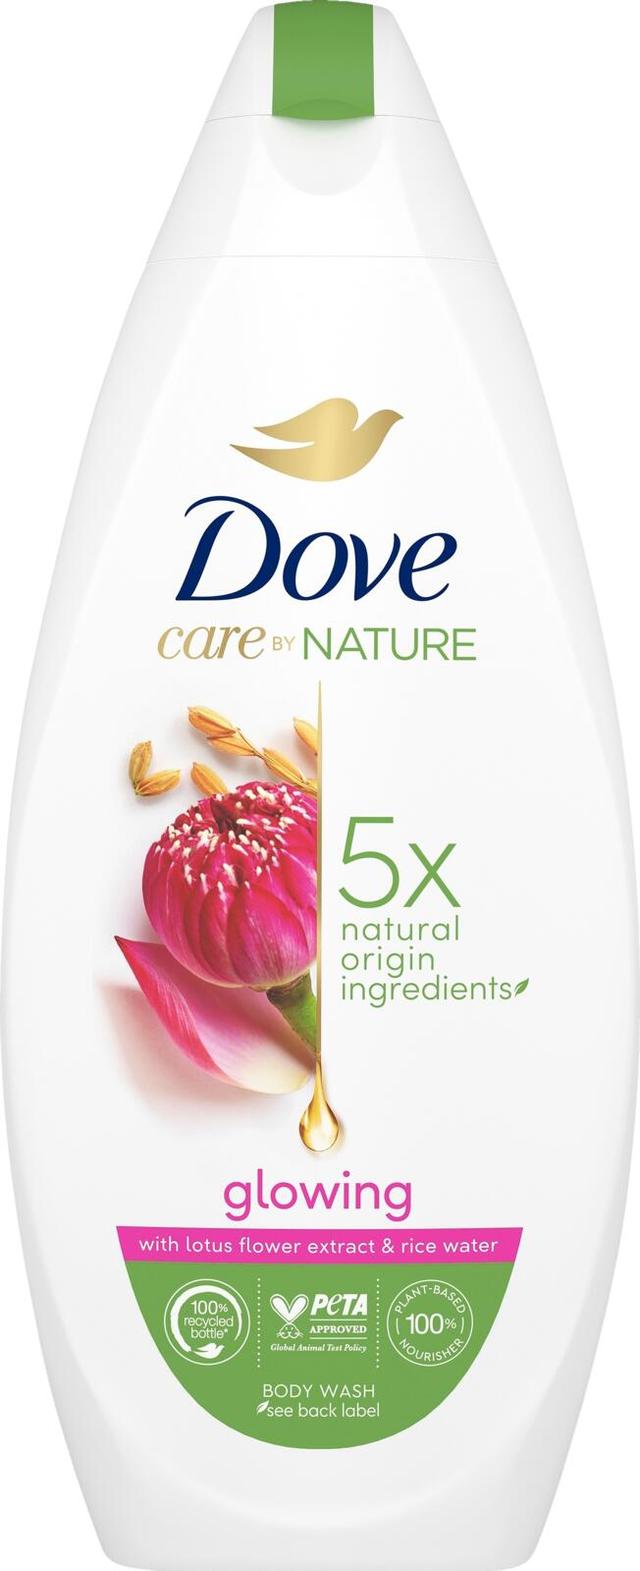 Dove Care By Nature Glowing Ritual Suihkusaippua lootuskukkauutteen ja riisiveden tuoksu kosteuttaa ja pehmentää ihoa välittömästi 225 ml